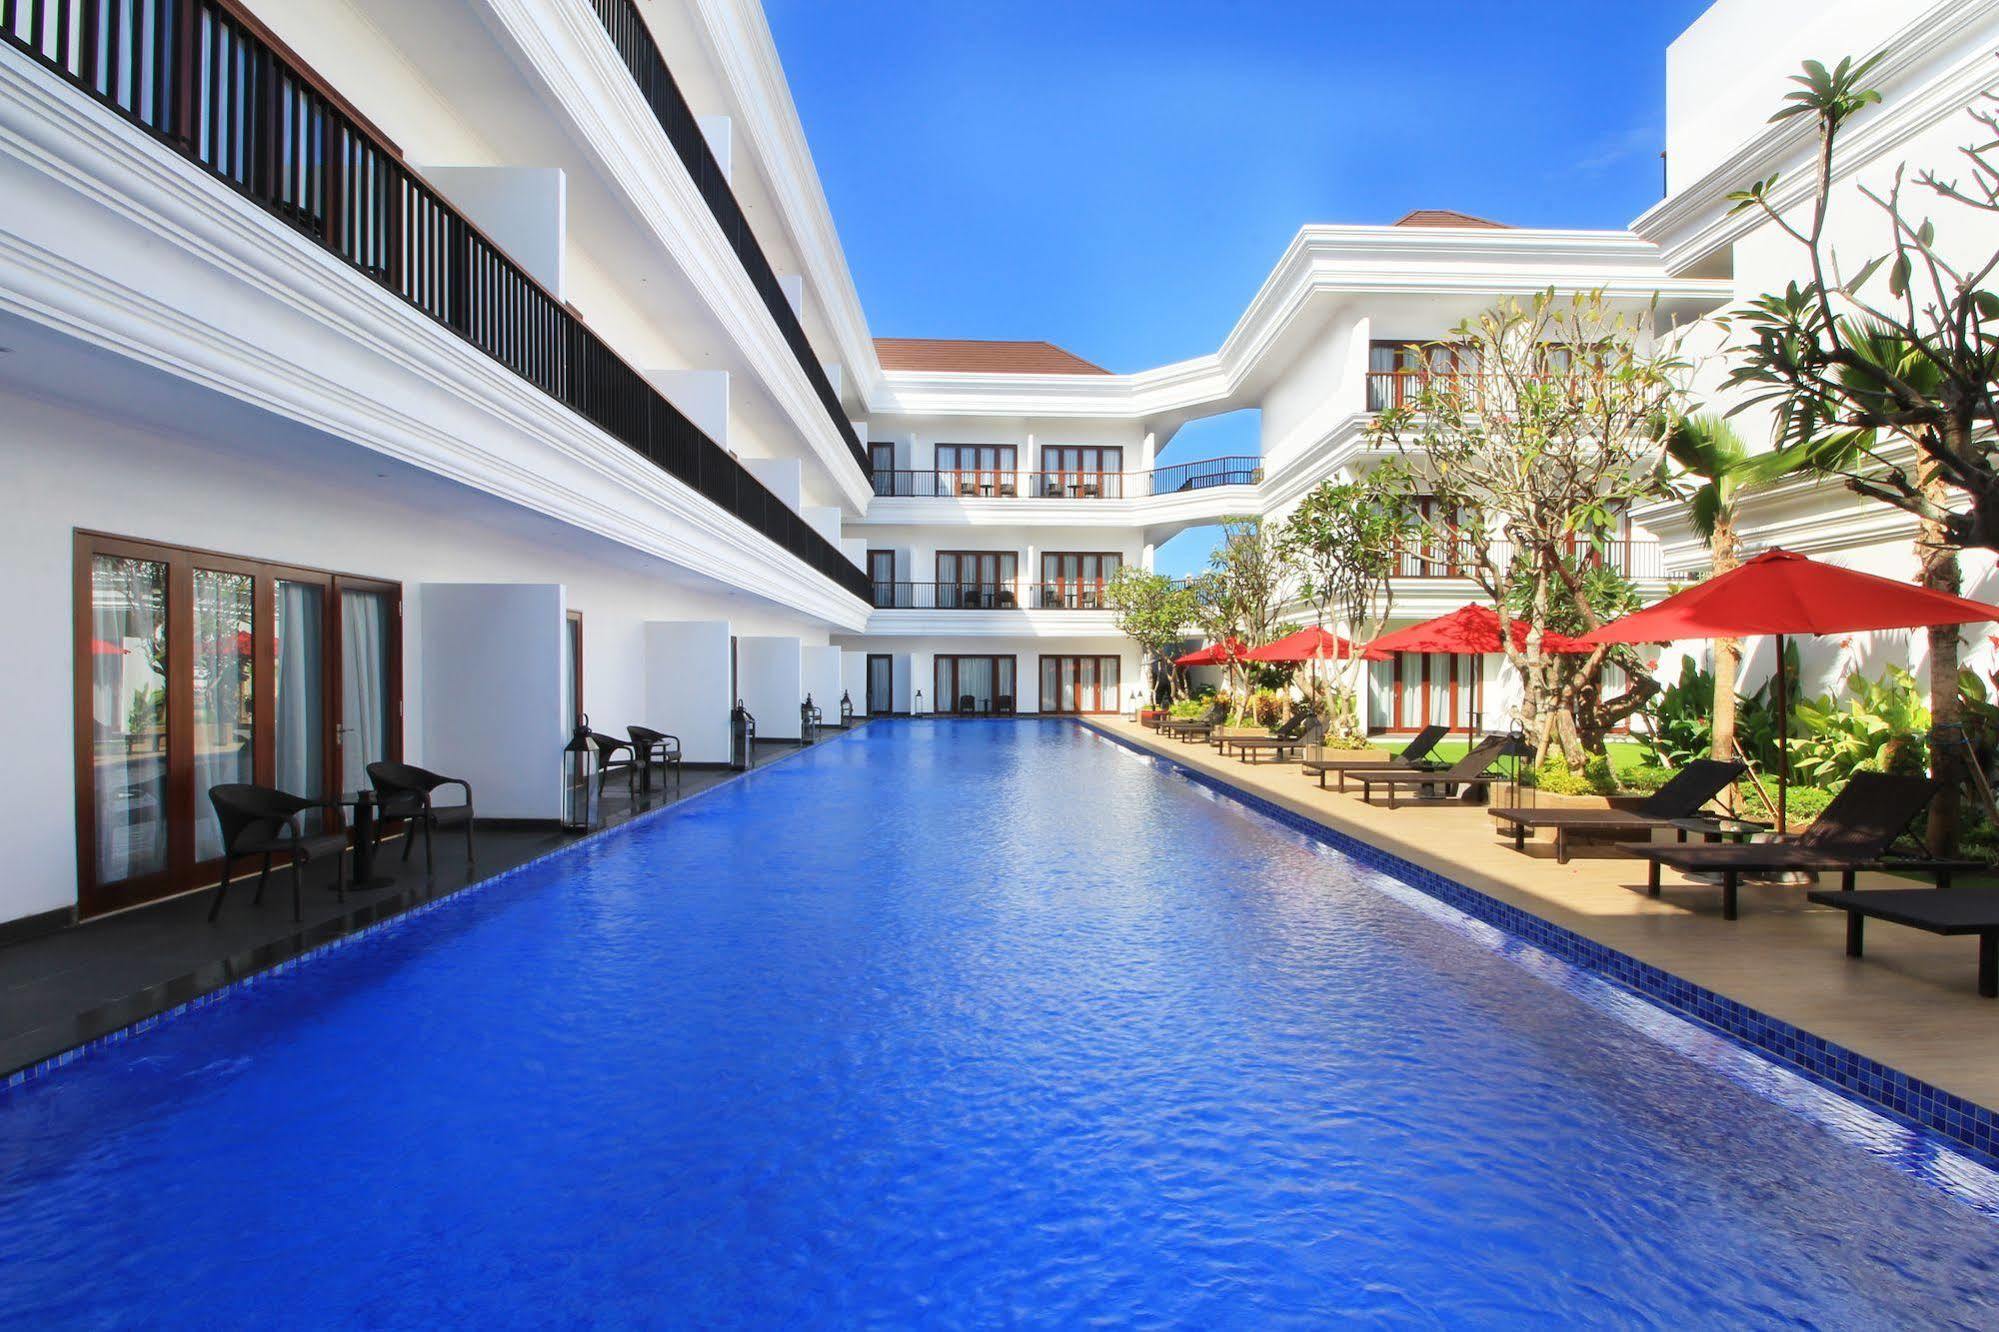 Grand Palace Hotel Sanur - Bali Luaran gambar